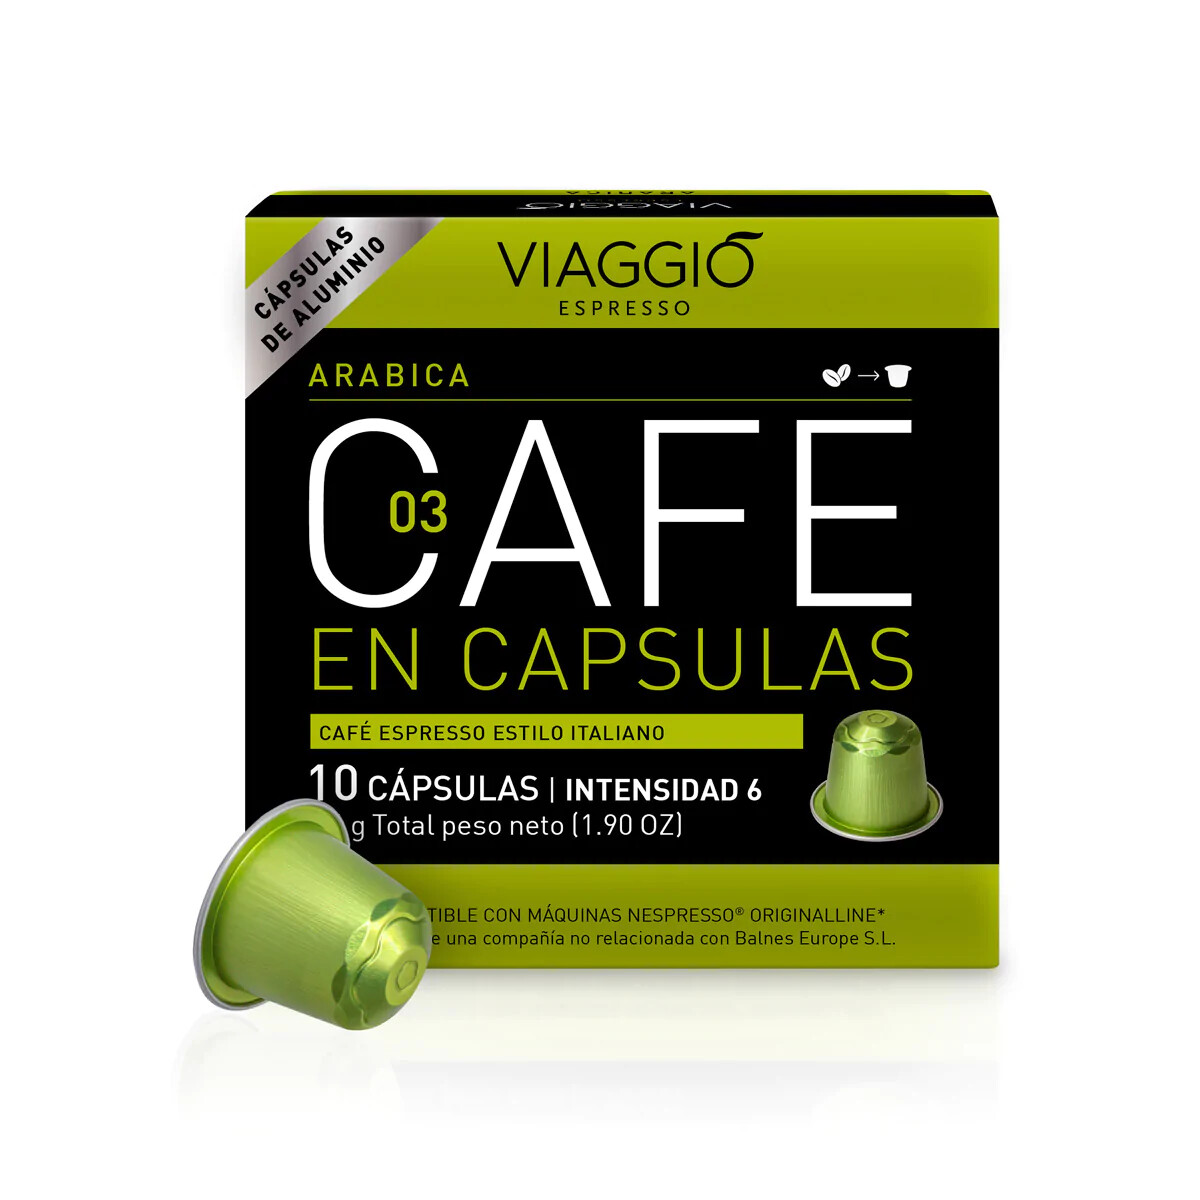 Viaggio Capsula Cafe ARABICA 10x54grs